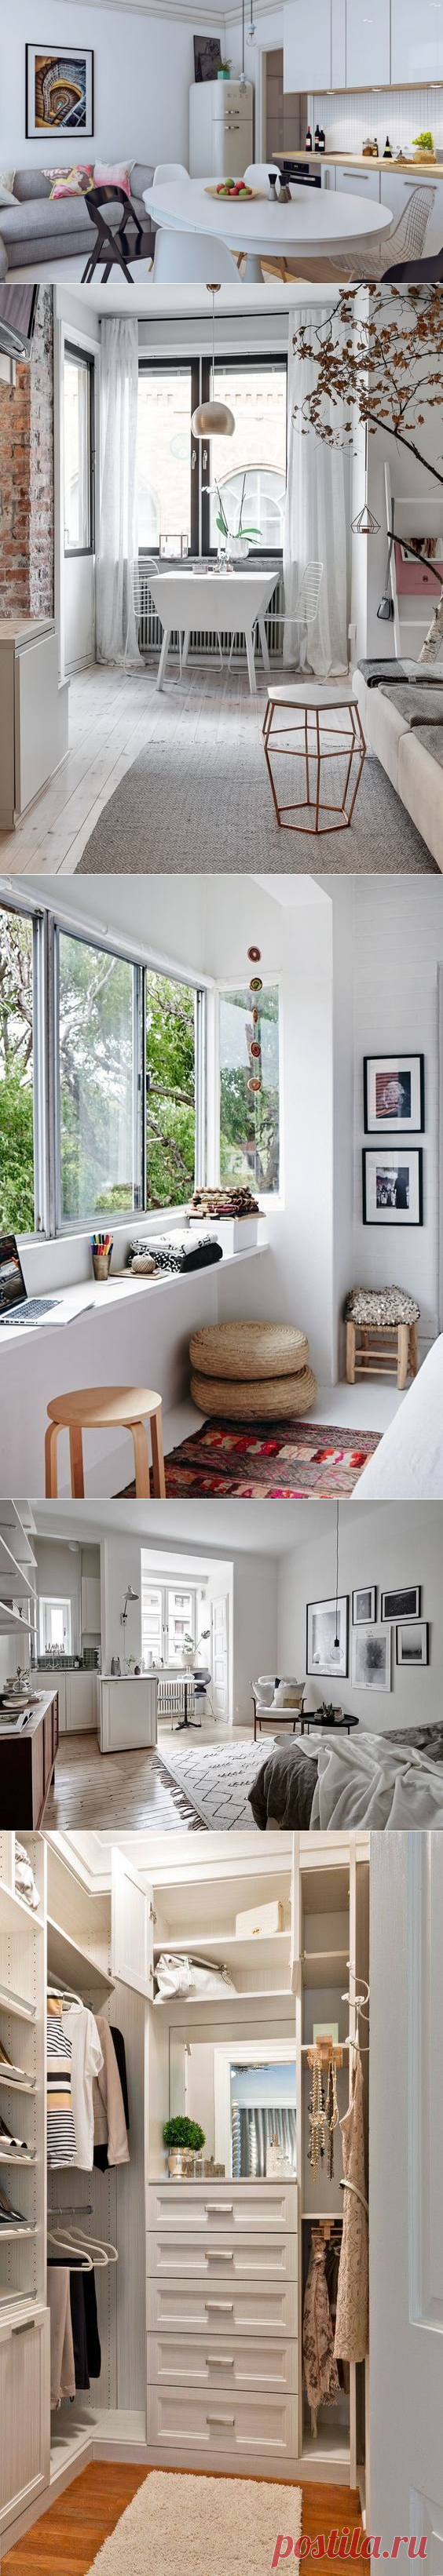 Дизайн маленькой квартиры — Роскошь и уют